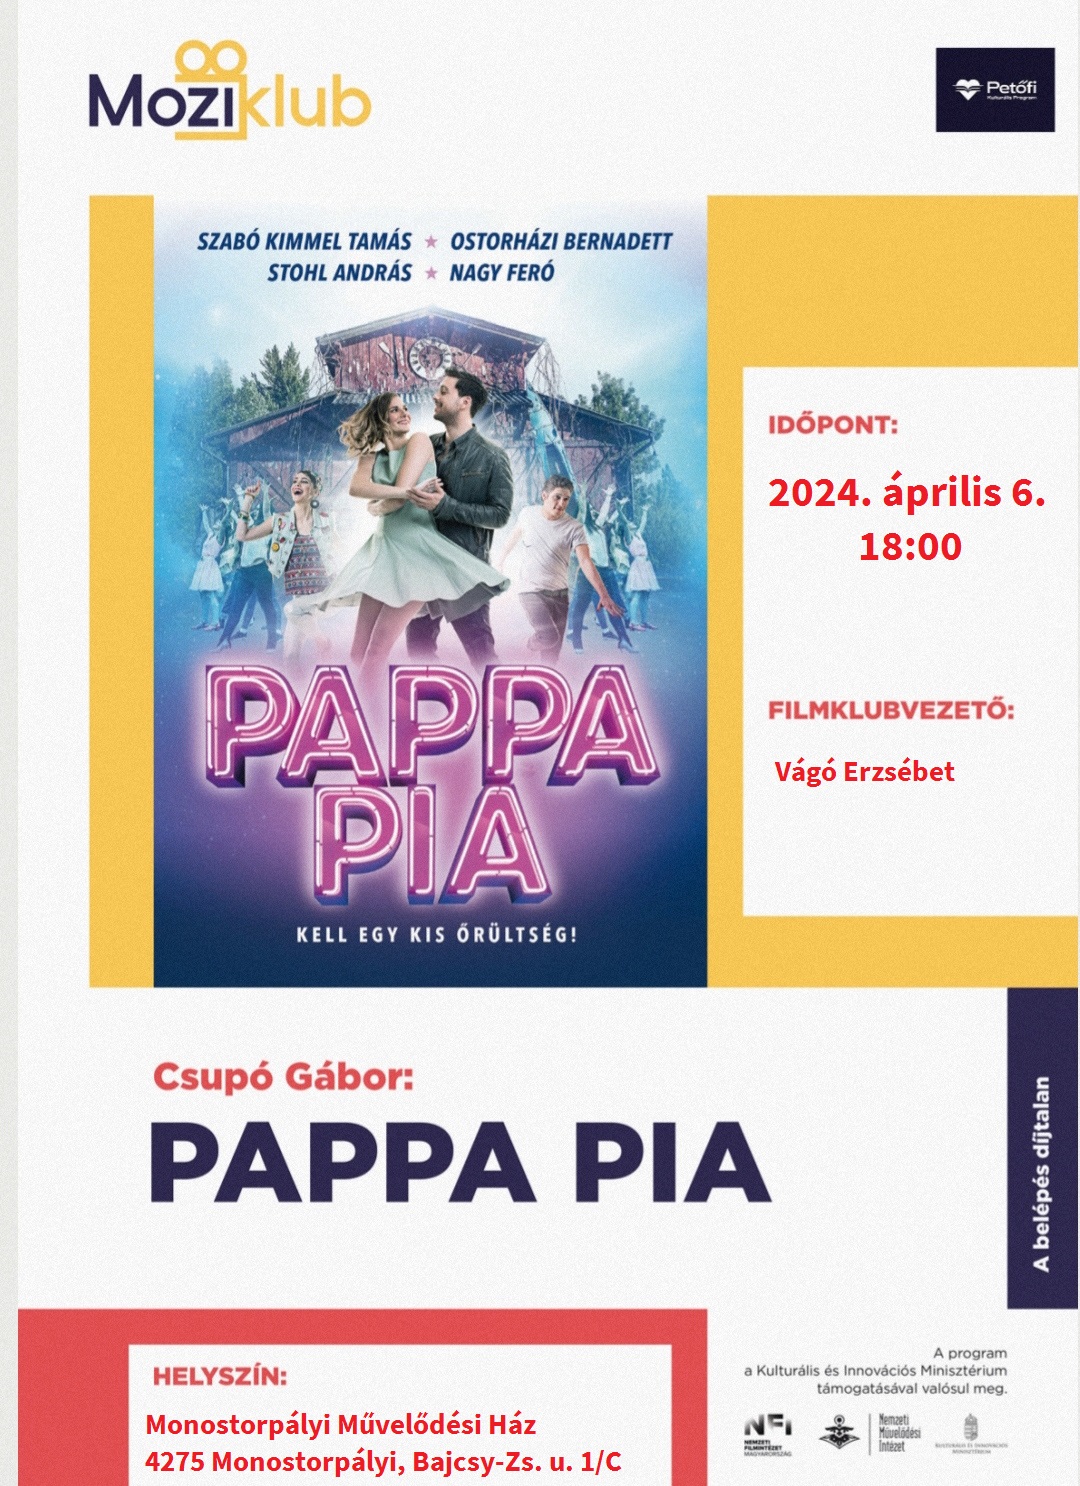 Moziklub- Pappa Pia című film vetítése